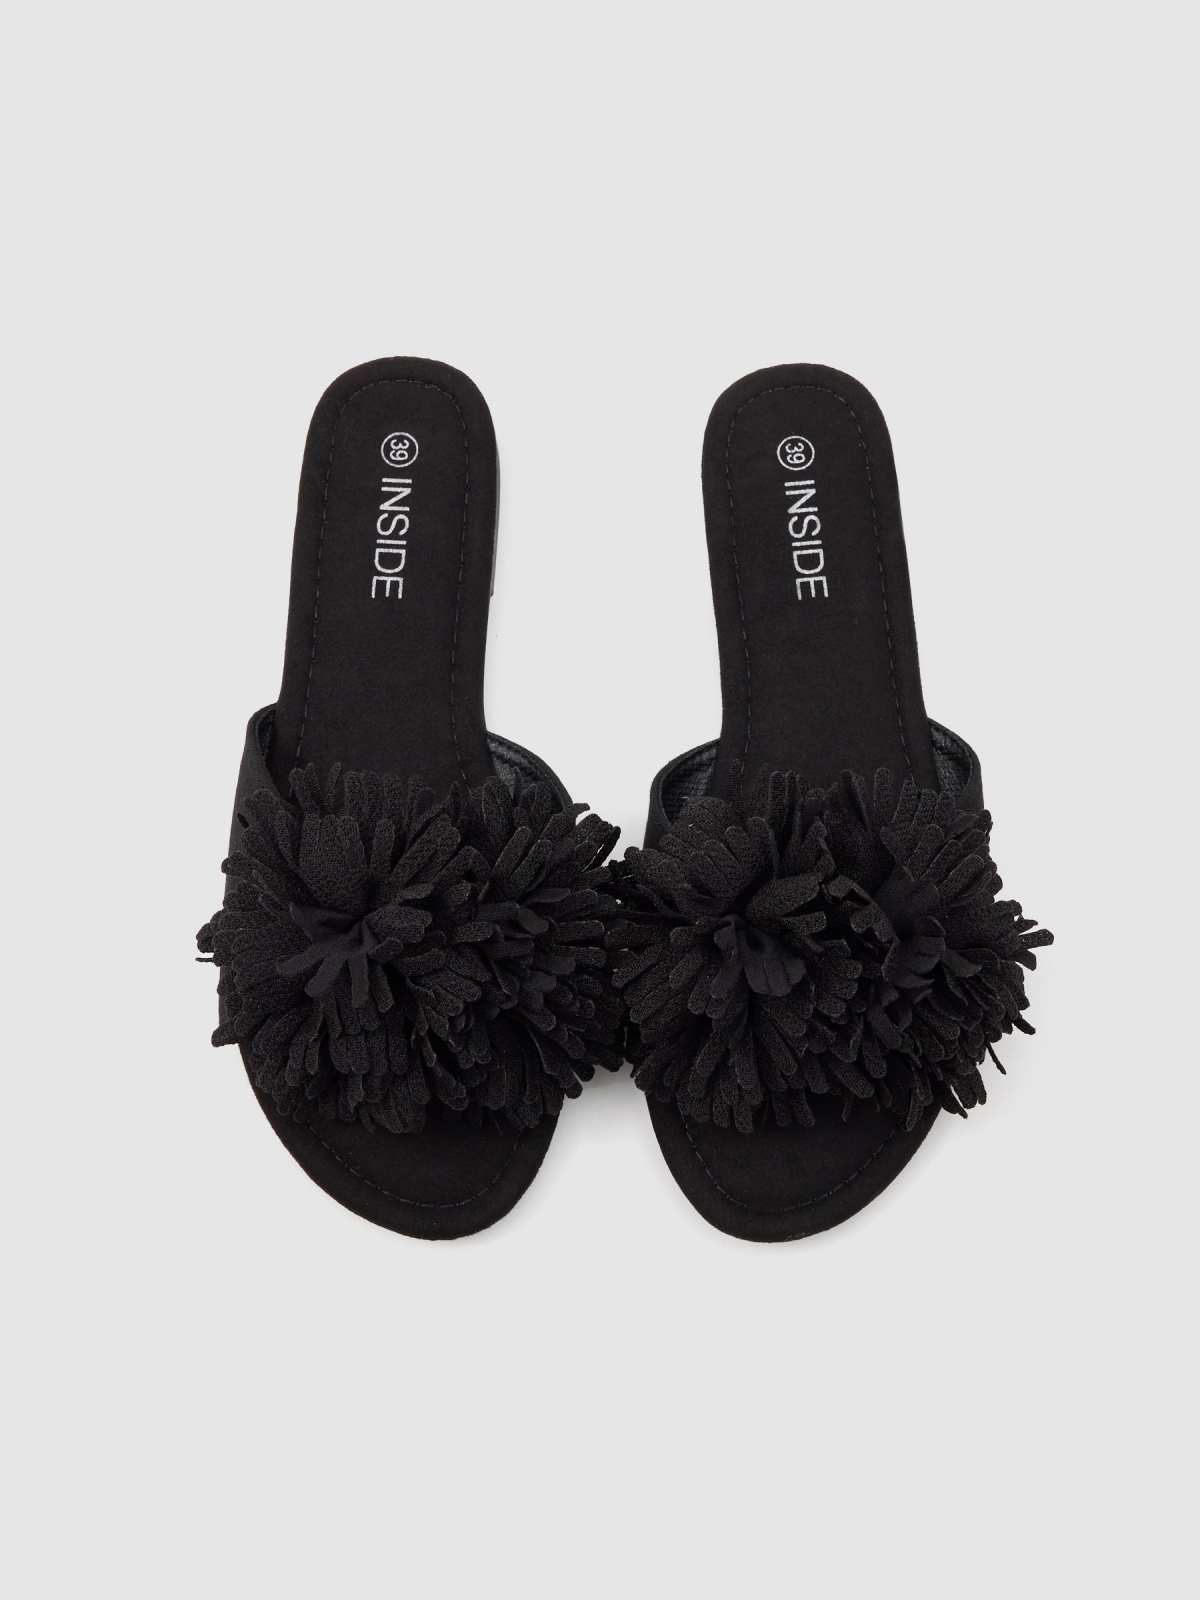 Floral sandal black zenithal view